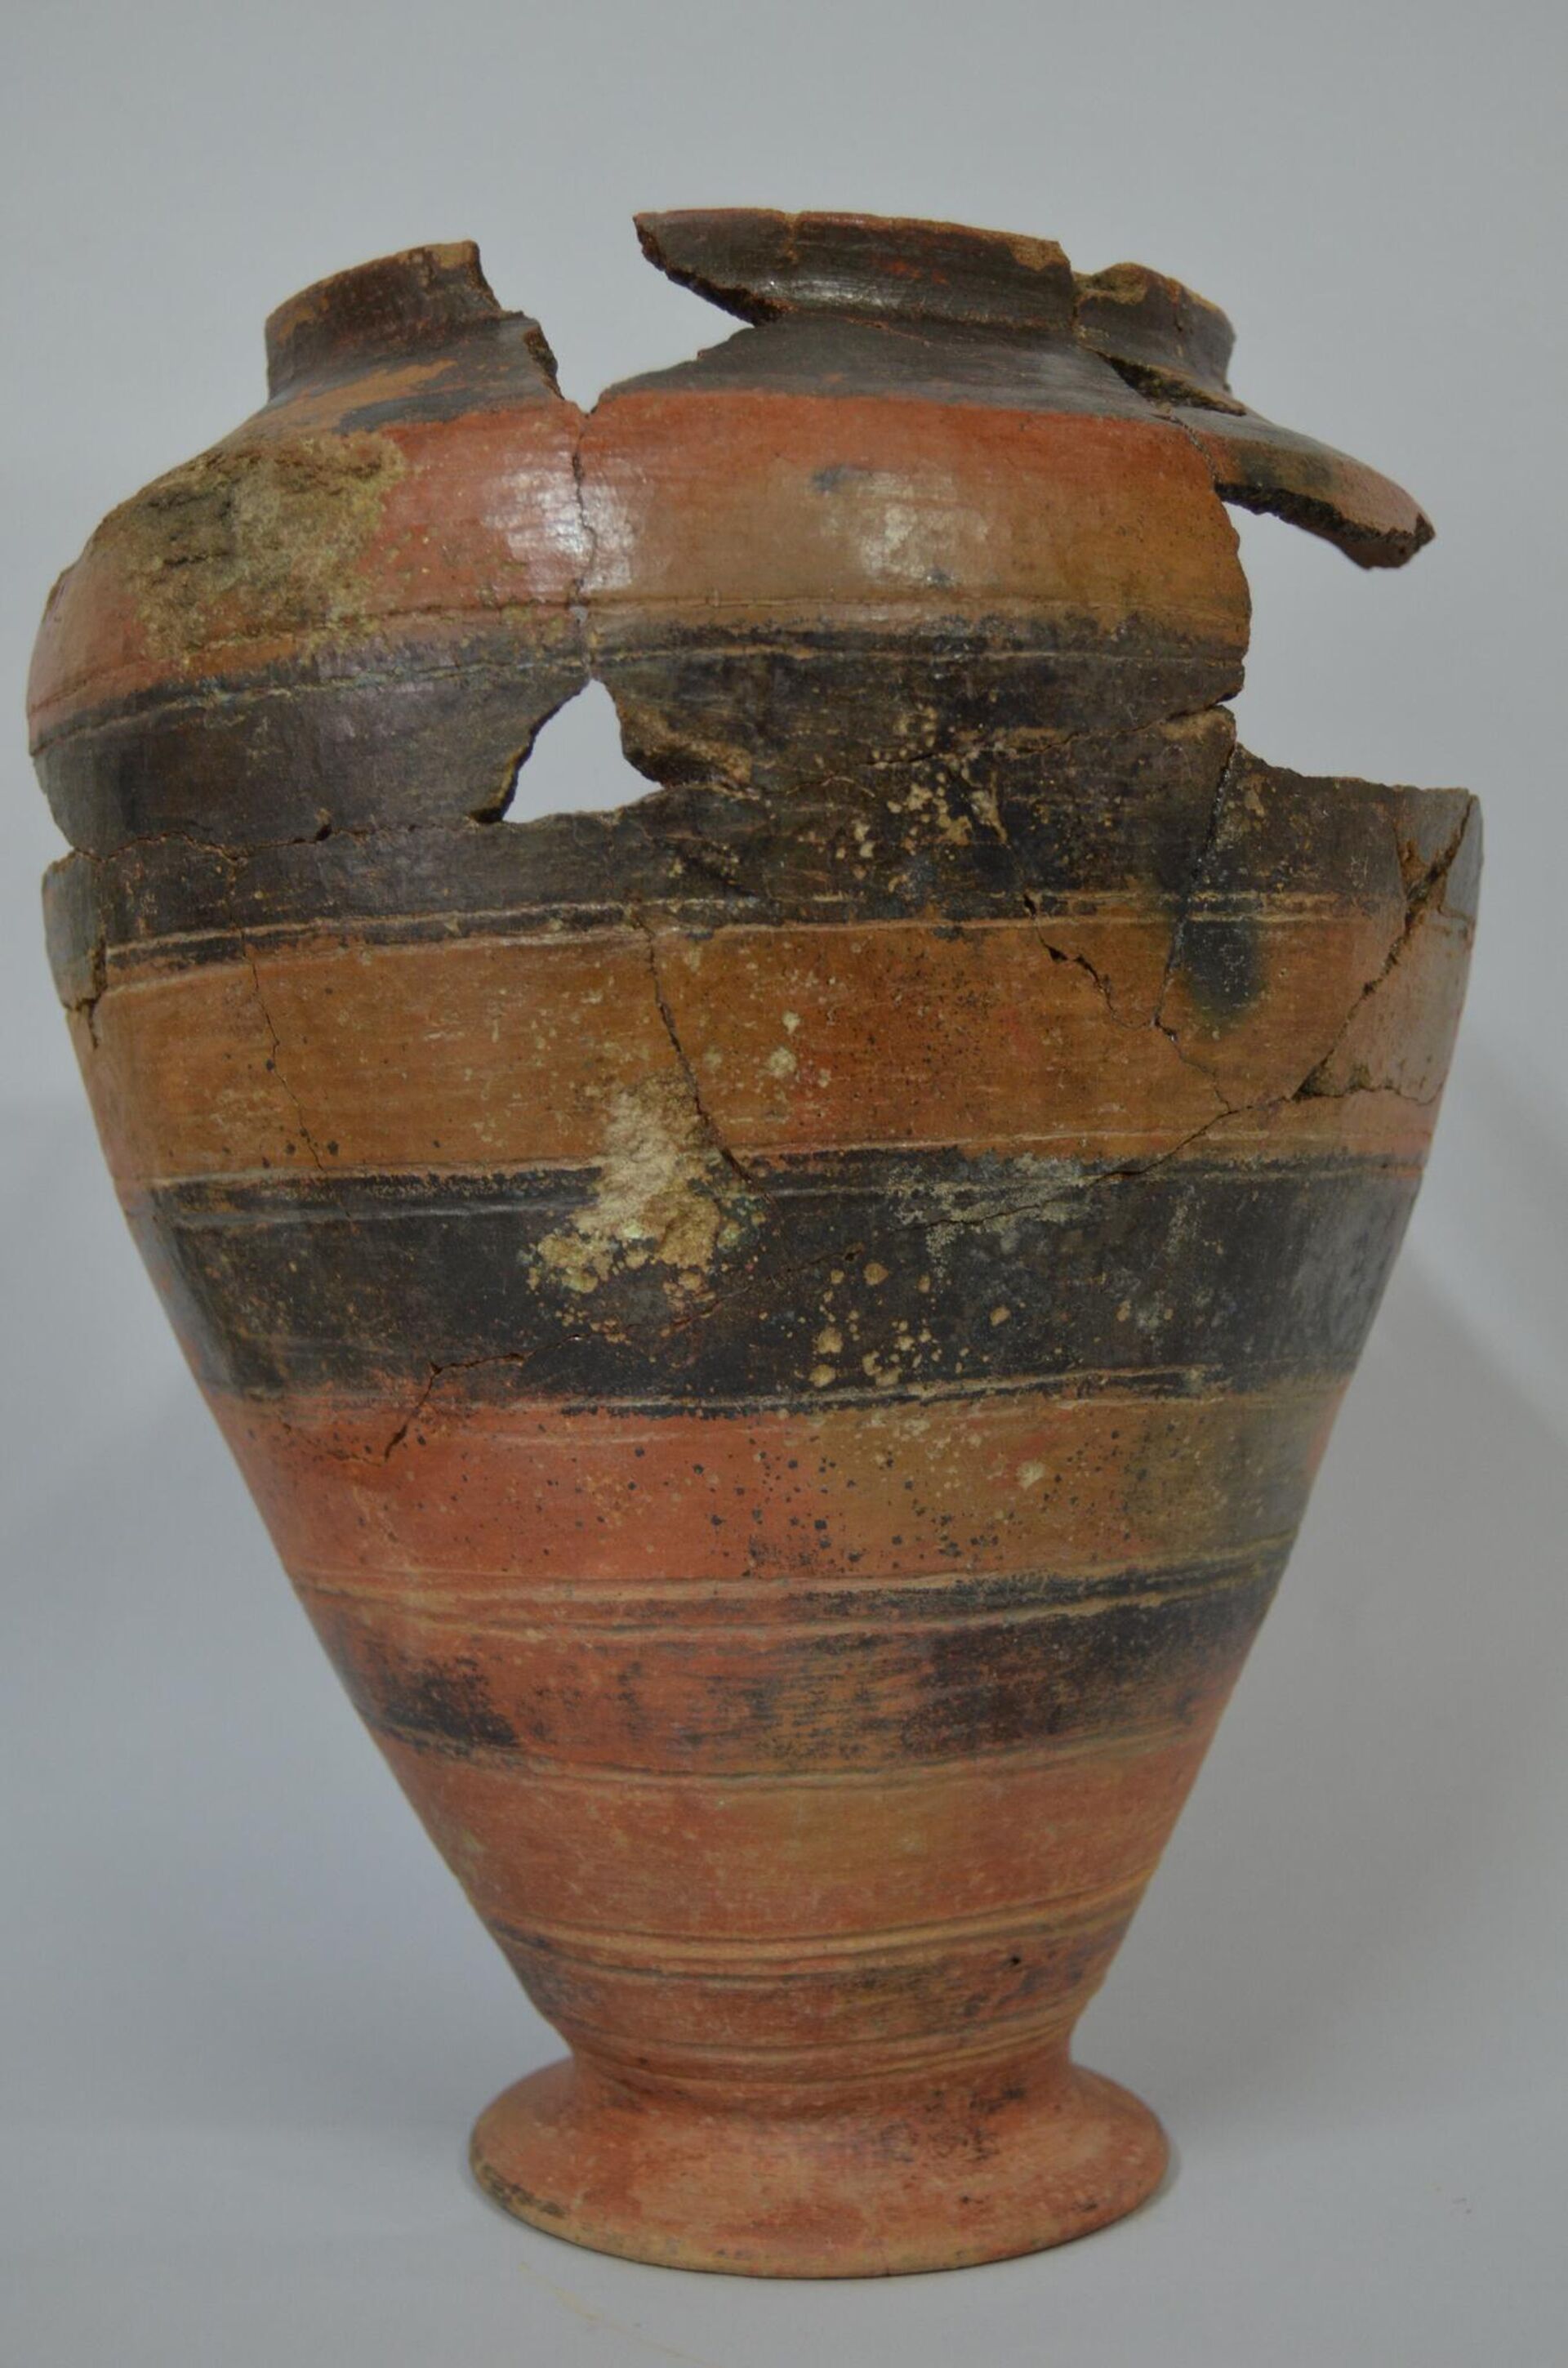 Vaso usado como recipiente cinerário - Sputnik Brasil, 1920, 23.06.2022